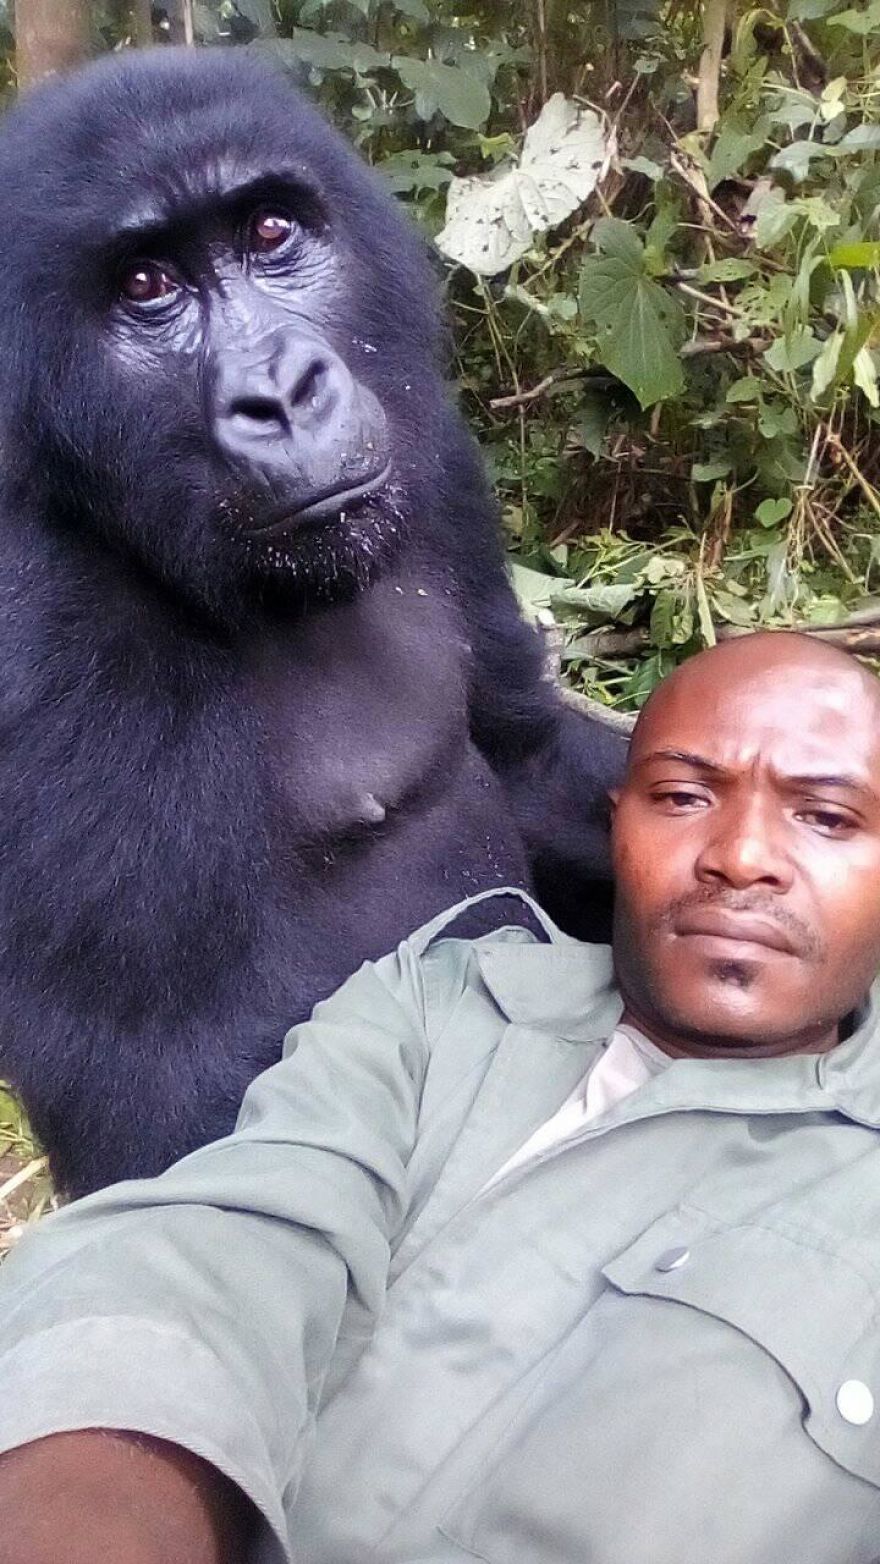 Het gedrag van de gorilla's in de buurt van hun verzorgers is relaxed en familiair omdat ze hen al kennen sinds ze als babies gered zijn. Hoewel is mooi is om de vertrouwensband tussen gorilla en mens te zien, is het jammer dat de situatie an sich bestaat.